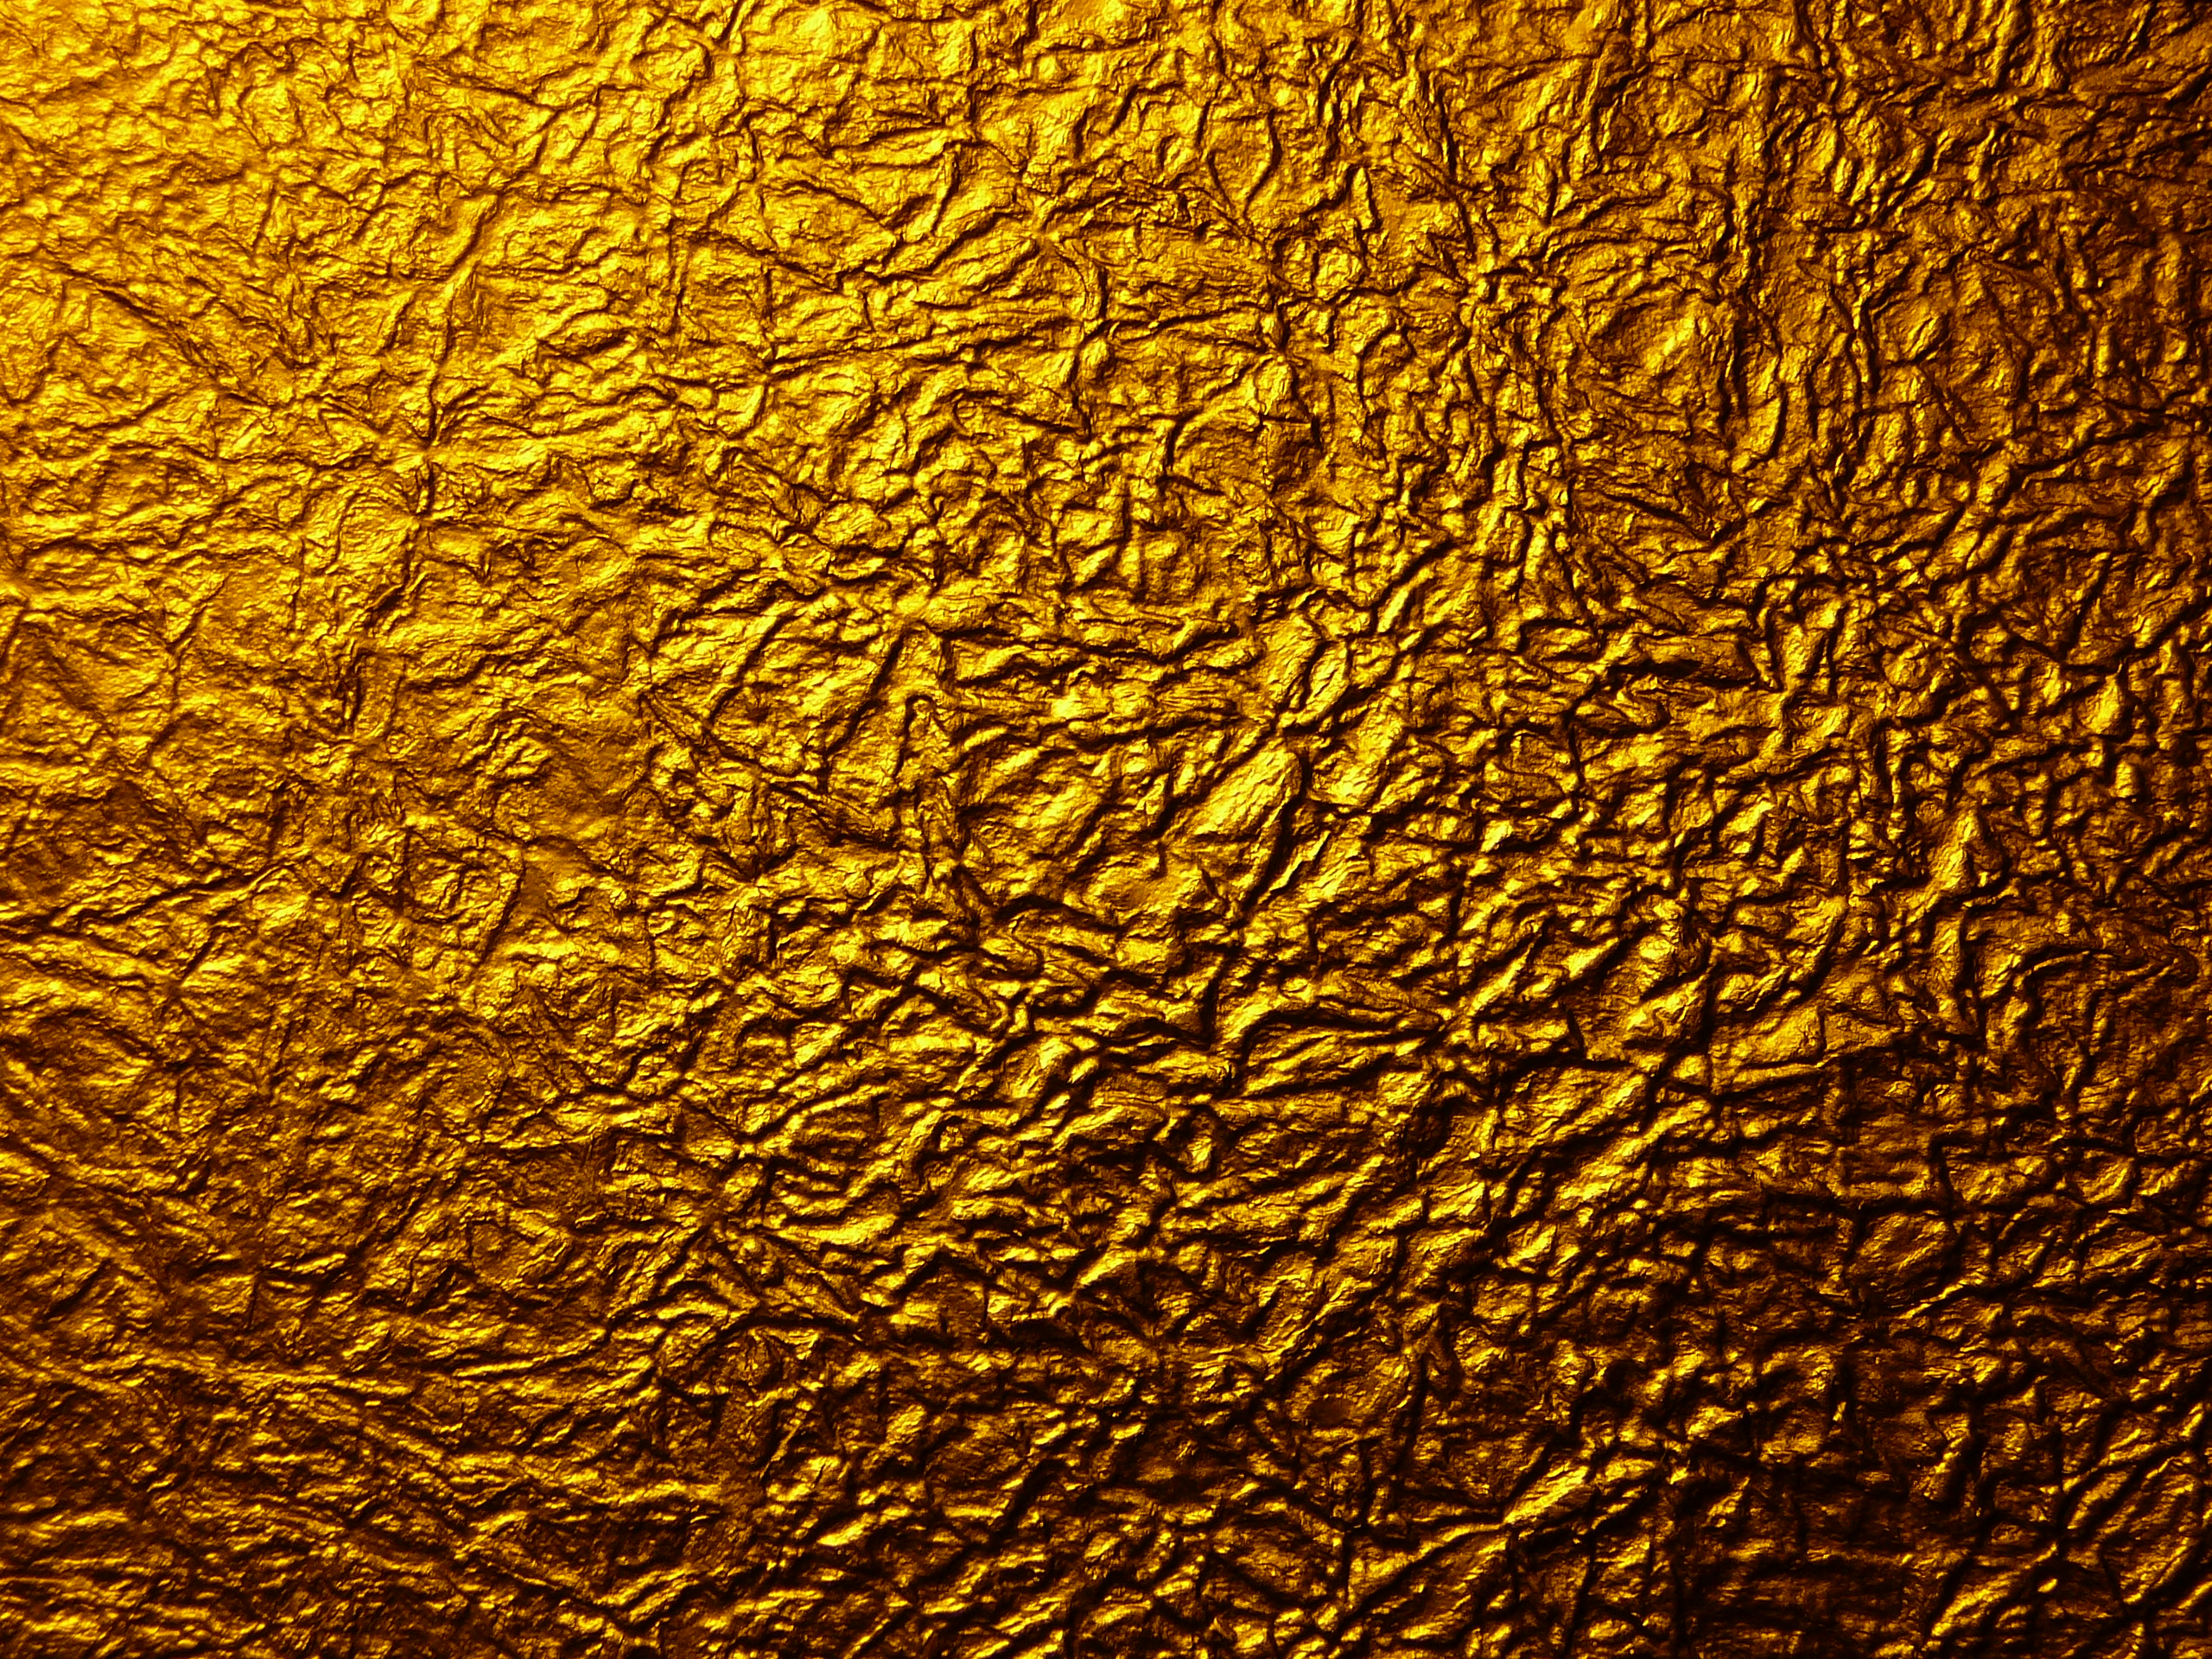 48+] Wallpaper with Gold - WallpaperSafari